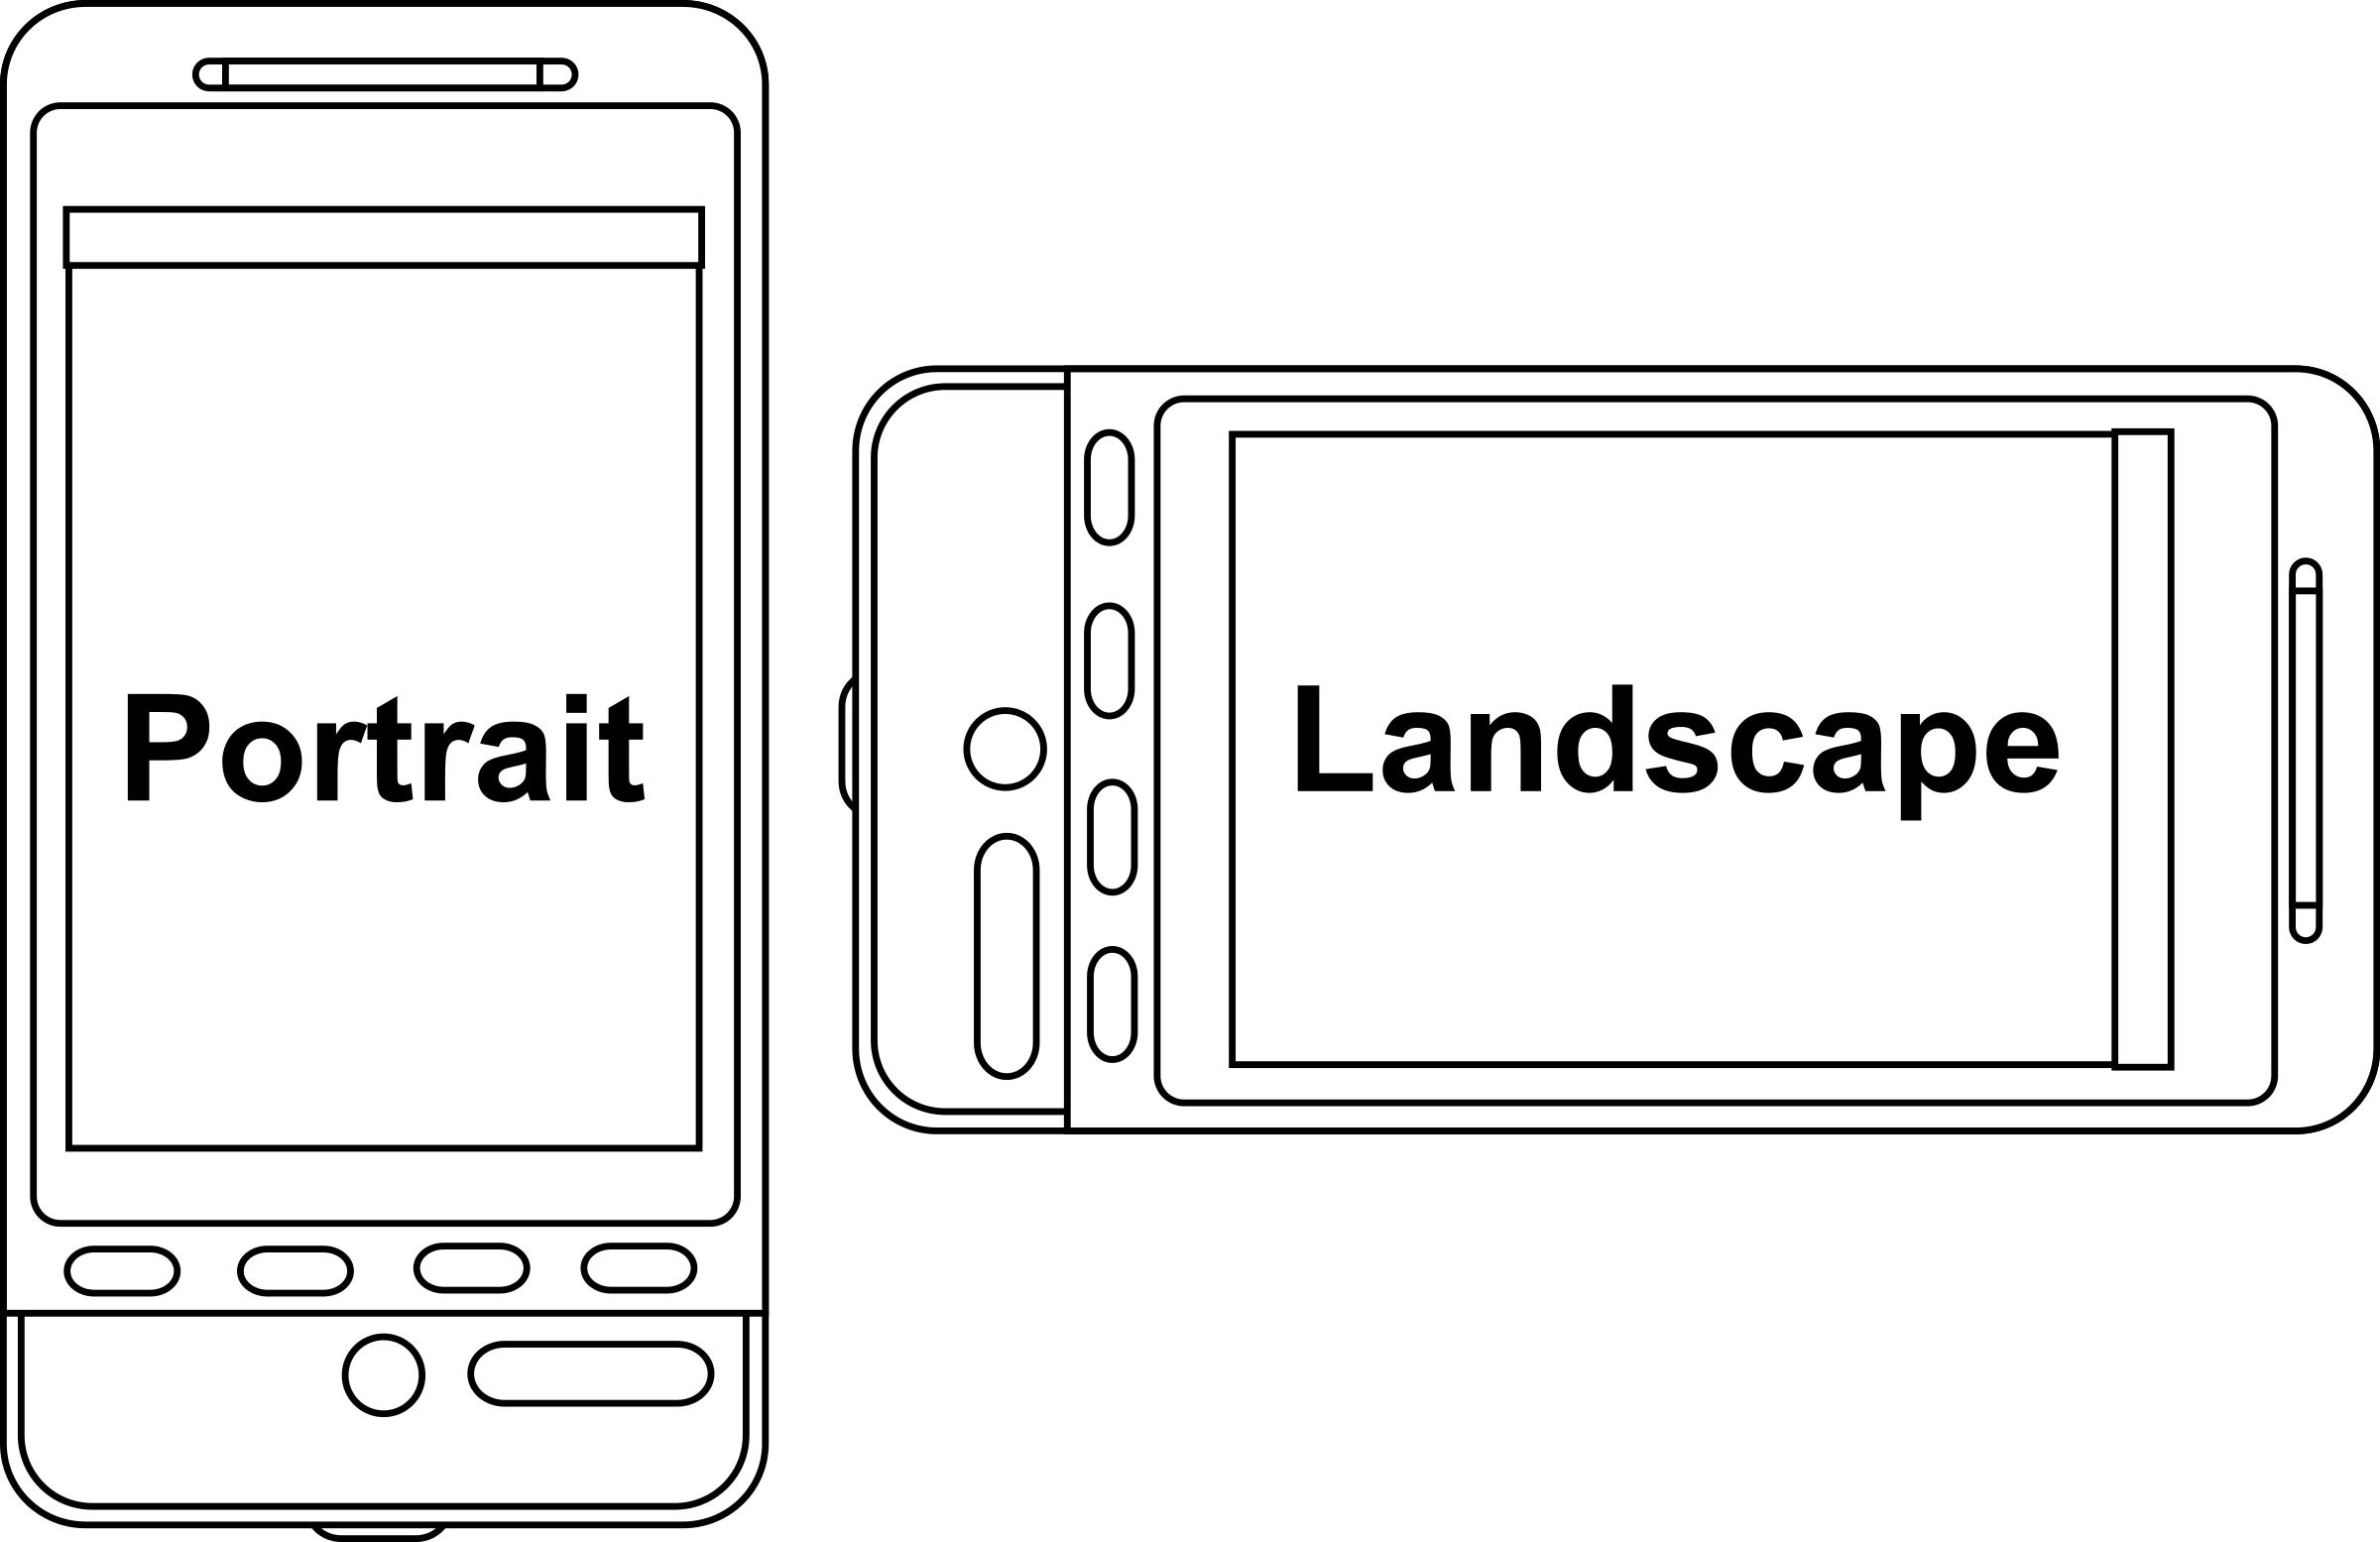 Portrait v Landscape Device Orientation PNG icons